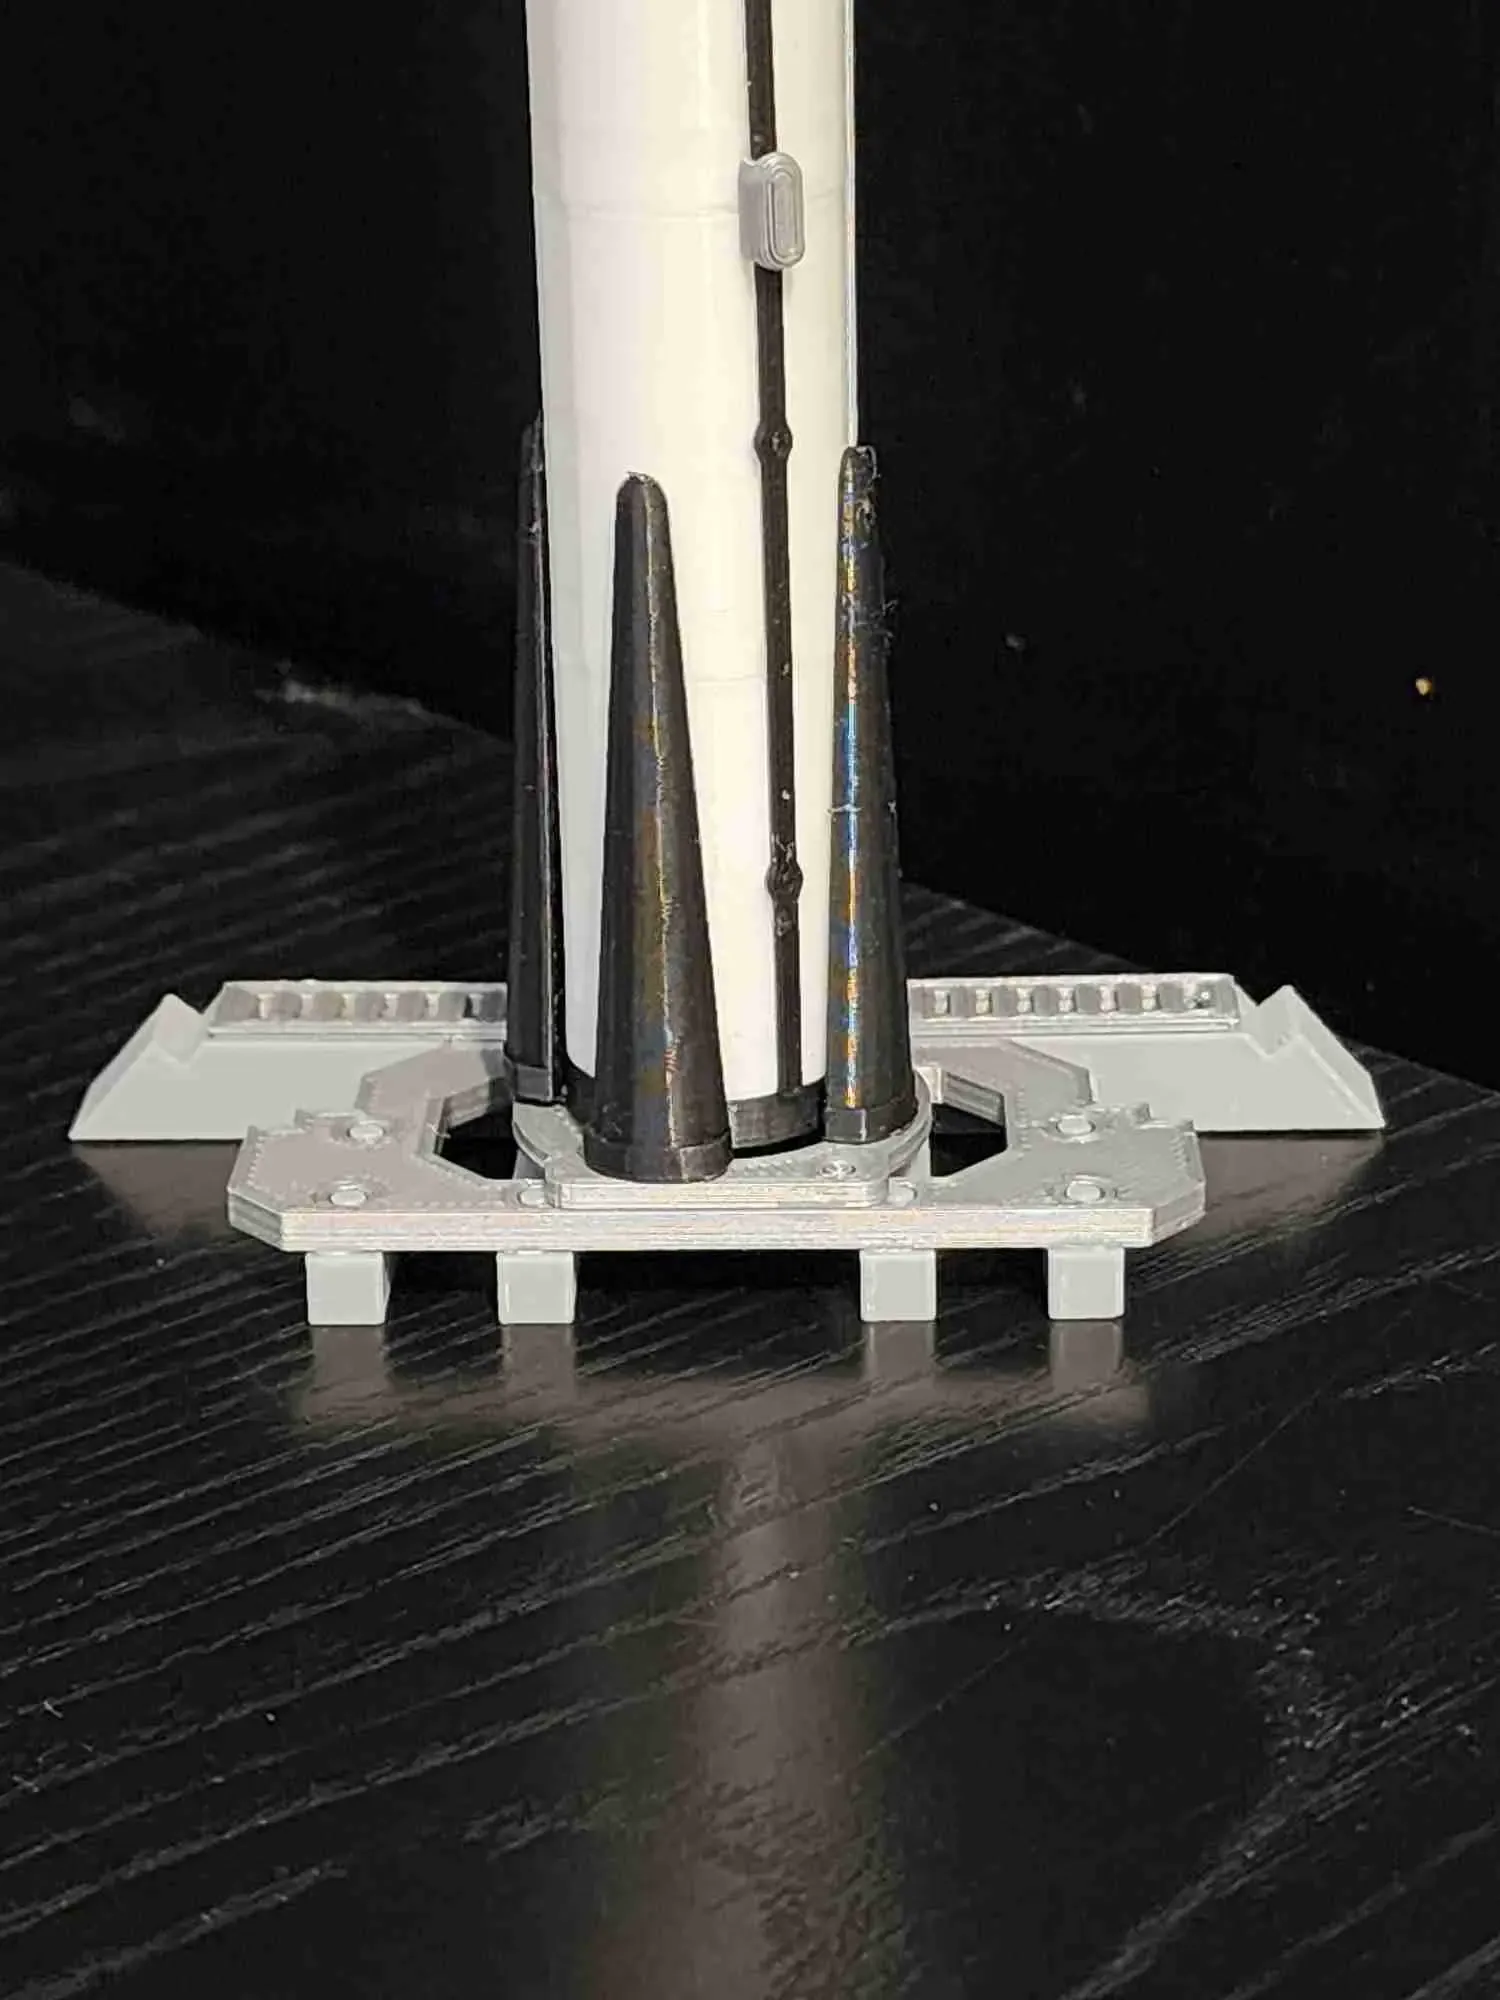 Modelo Spacex Falcon 9 (1:180) / Rocket